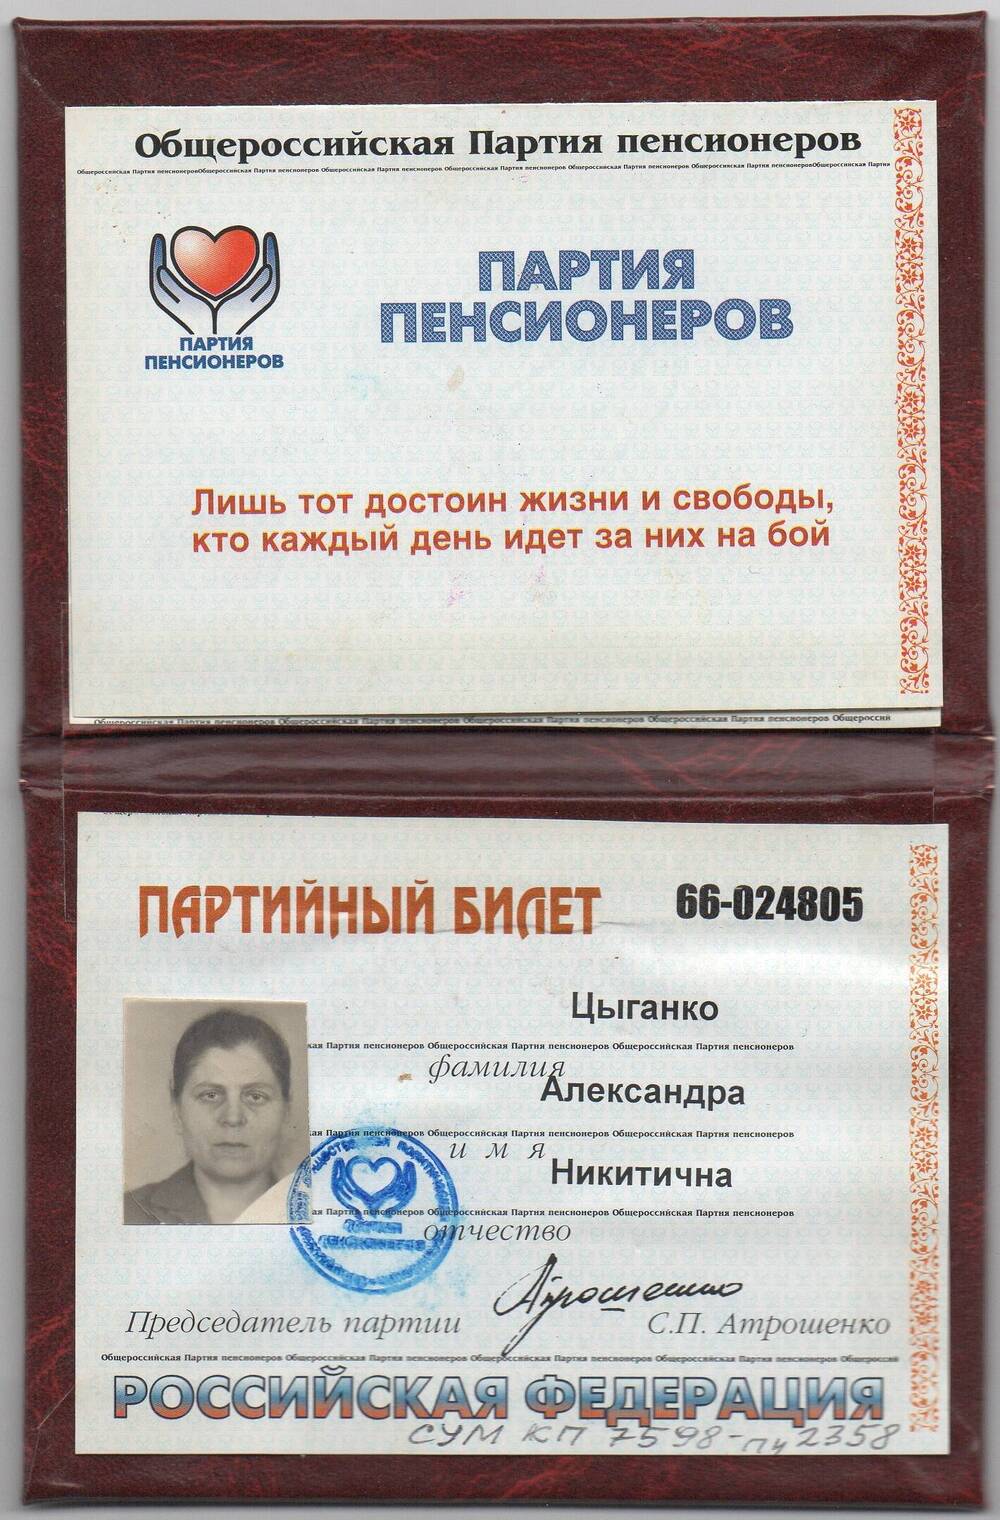 Билет партийный № 66-024805 Общероссийской Партии пенсионеров Цыганко Александры Никитичны